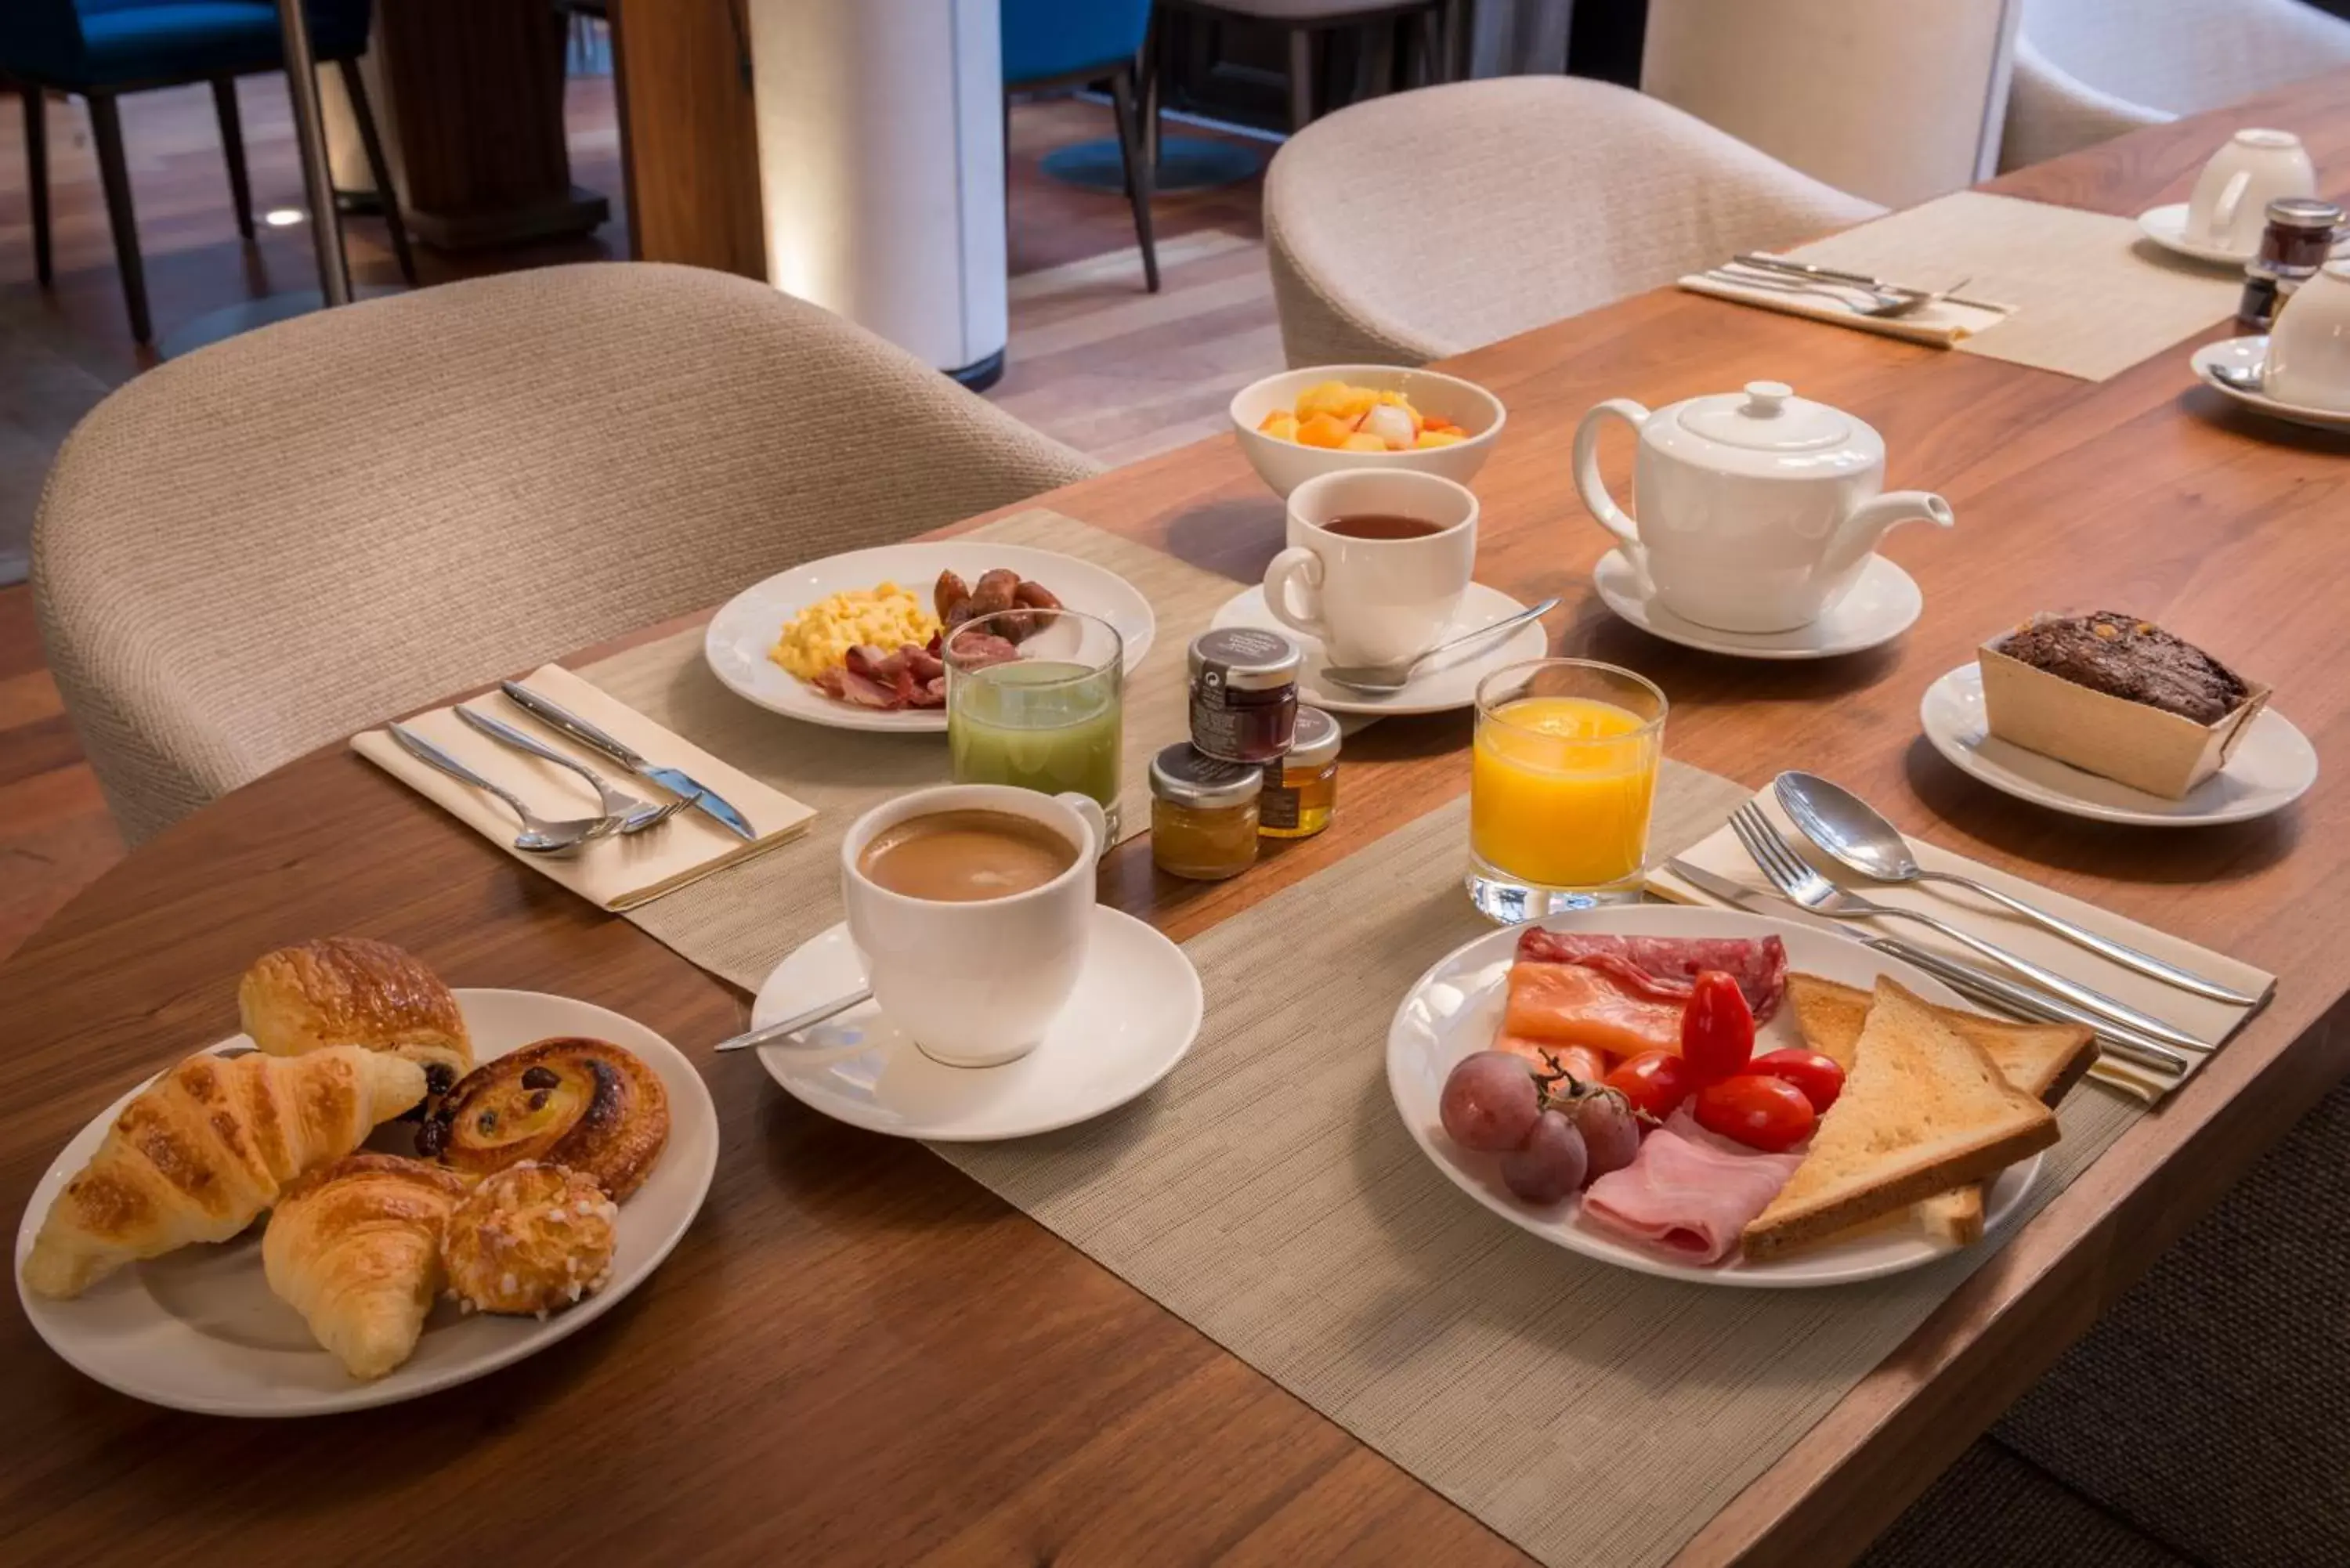 Buffet breakfast, Breakfast in Hôtel Le Walt by Inwood Hotels